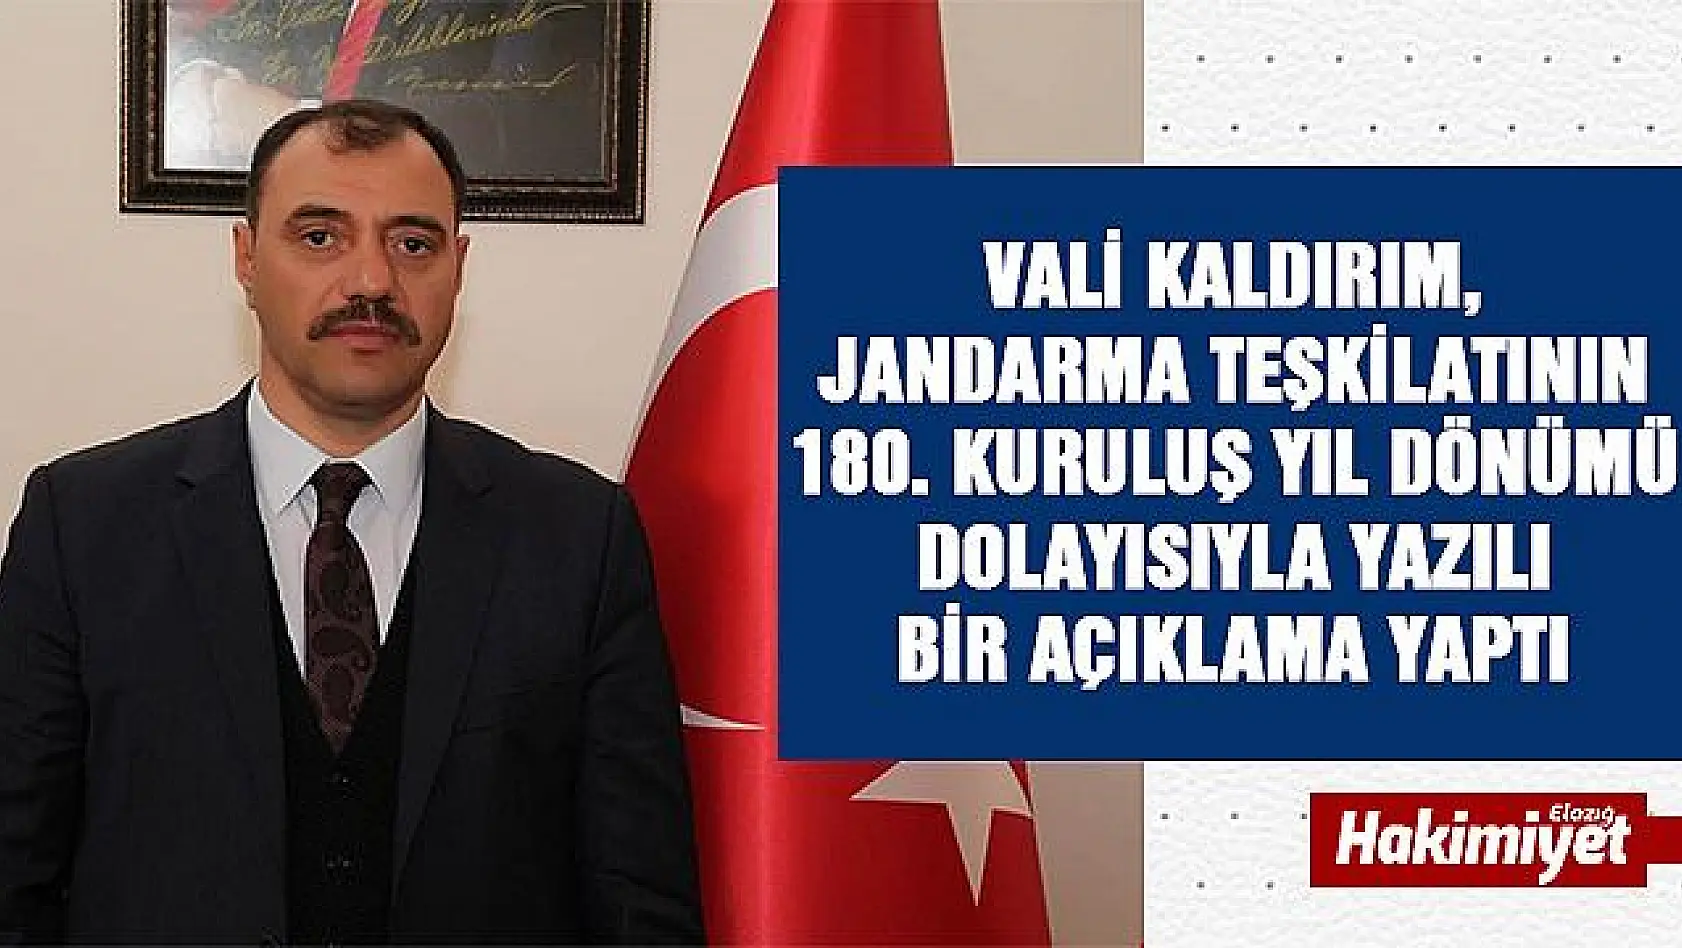 Vali Kaldırım'dan Jandarma Teşkilatının 180. Kuruluş Yıl Dönümü Mesajı